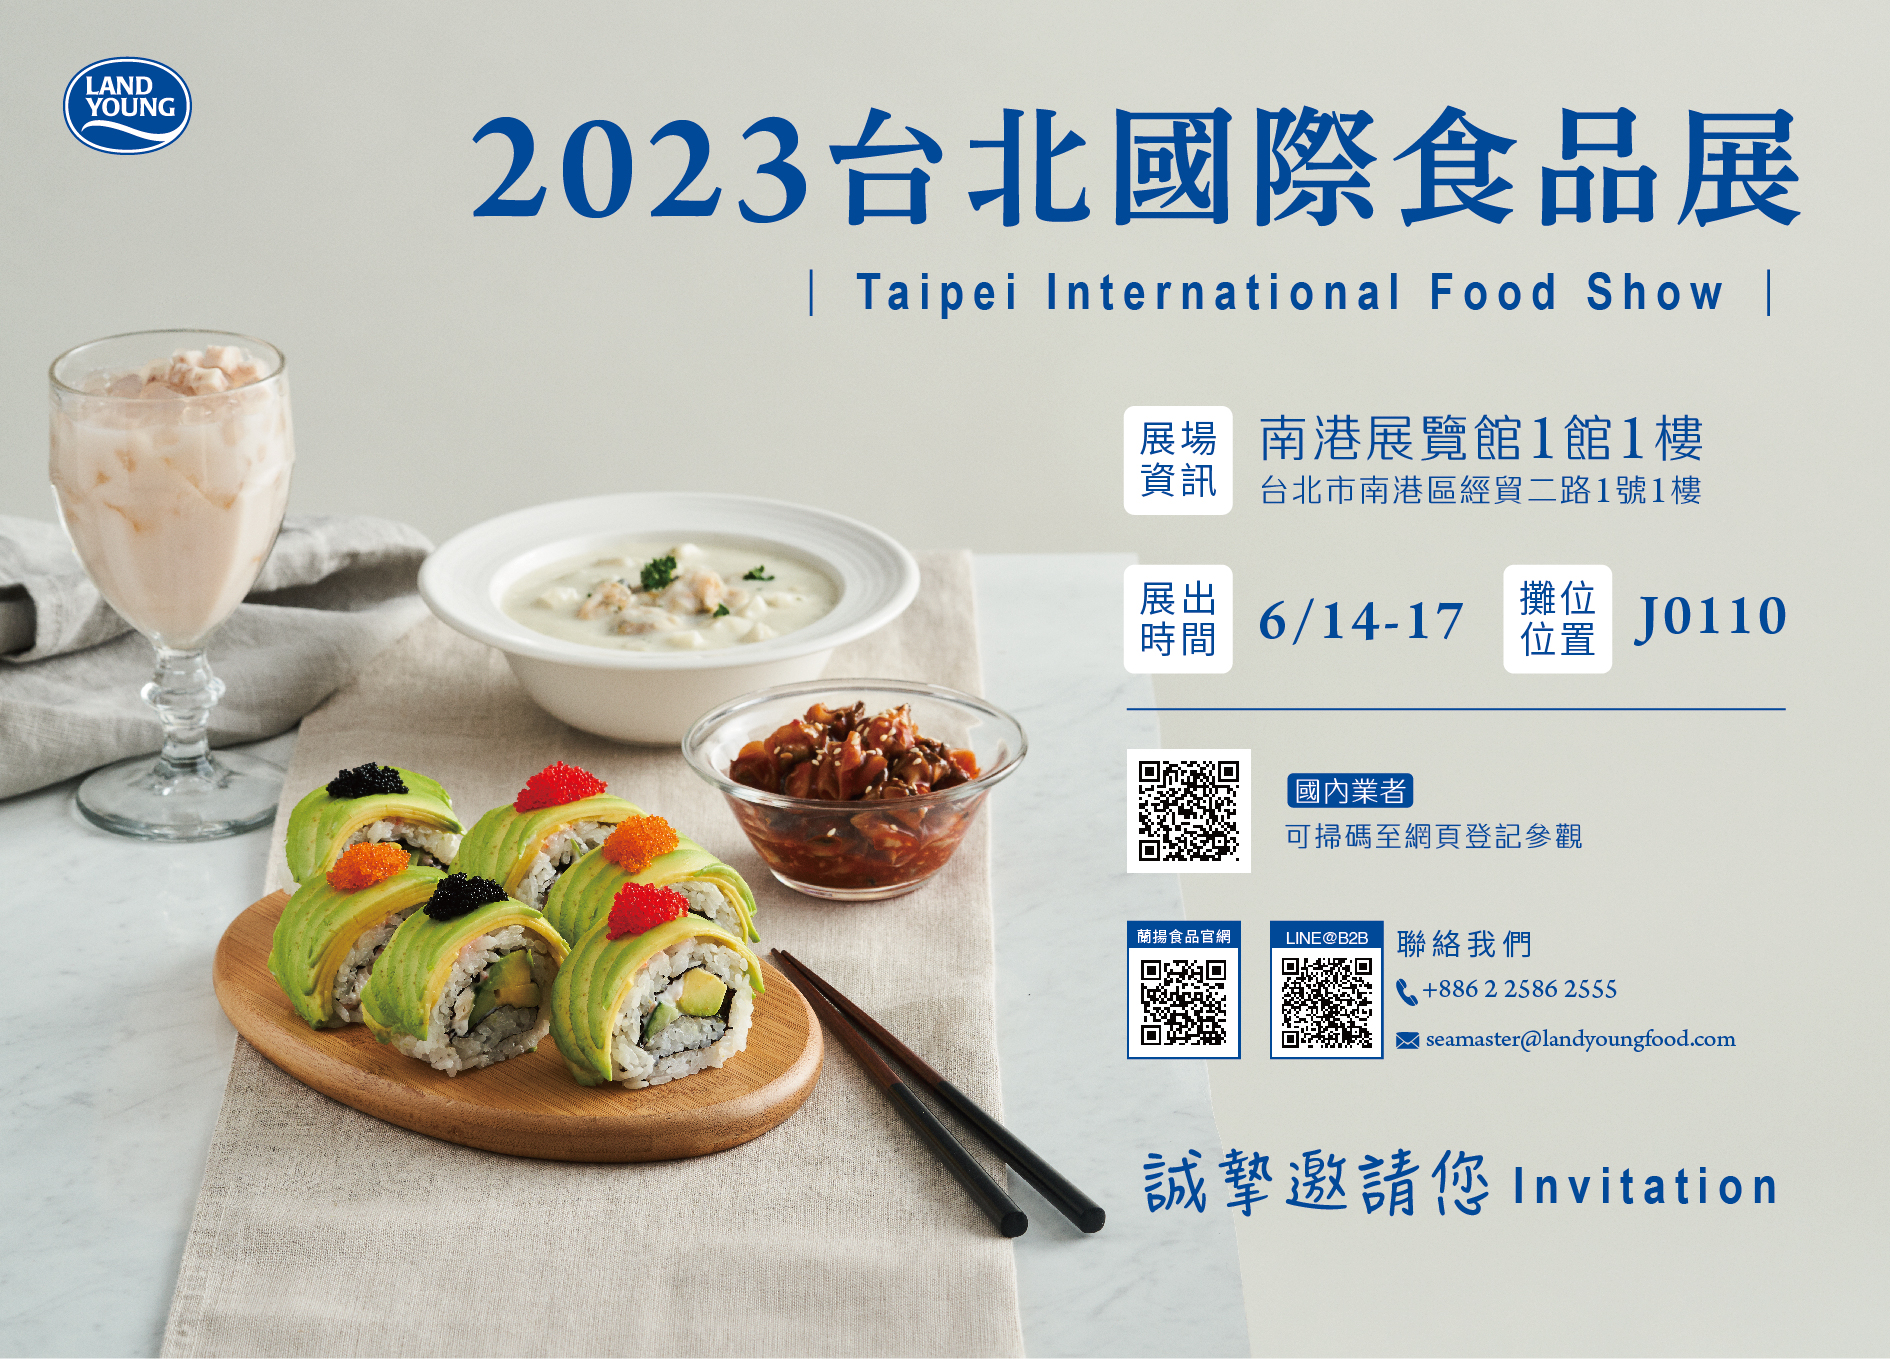 2023-بطاقة دعوة لعرض الطعام في تايبيه-الإصدار الصيني-V3-01